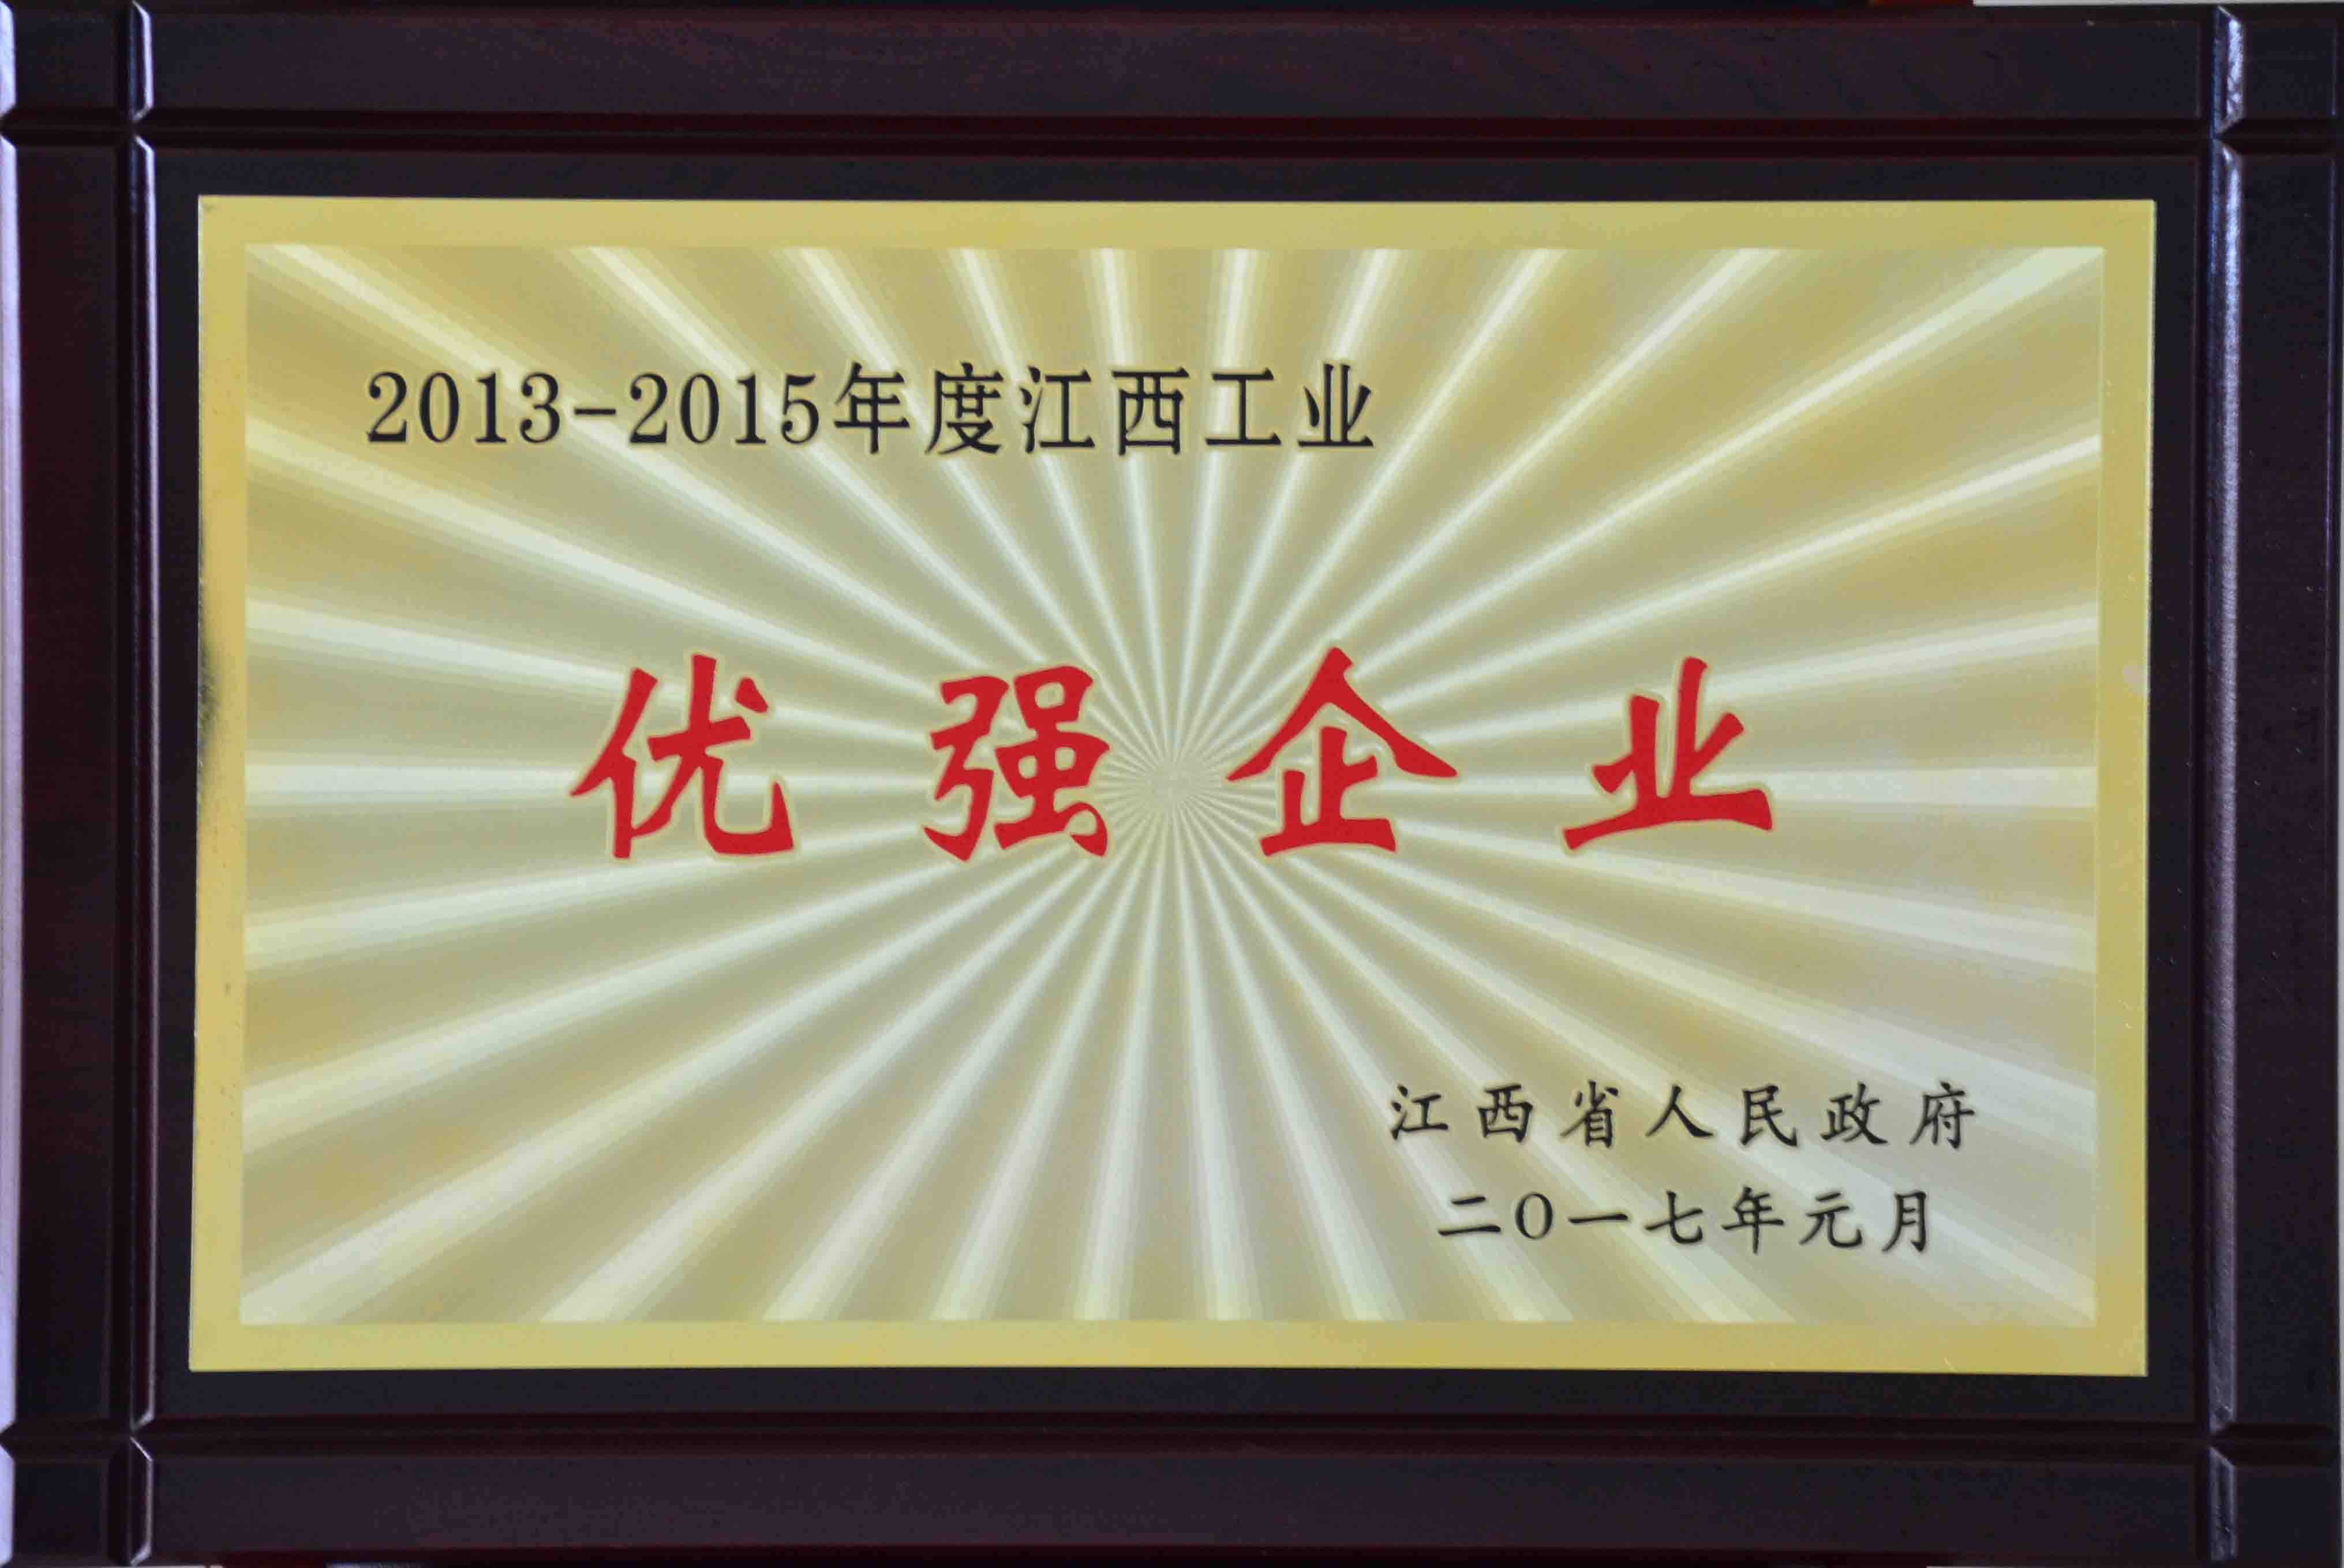 2013-2015年度yobo体育
工业优强企业